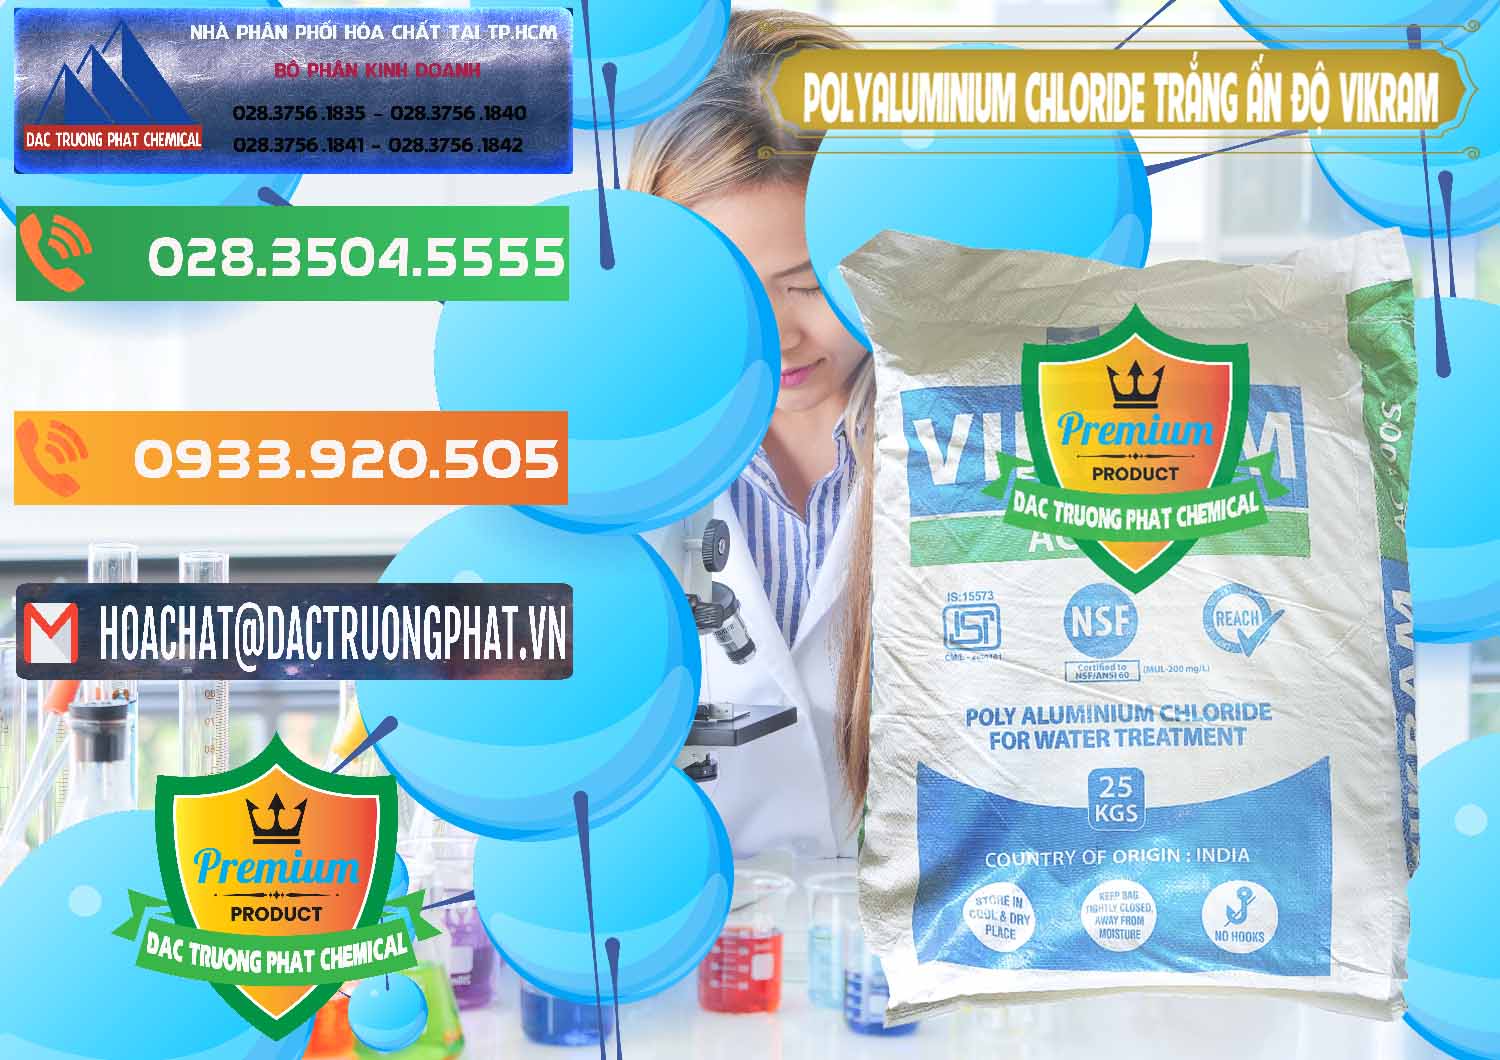 Công ty bán và cung cấp PAC - Polyaluminium Chloride Trắng Aditya Birla Grasim New 2022 Ấn Độ India - 0486 - Chuyên bán ( phân phối ) hóa chất tại TP.HCM - hoachatxulynuoc.com.vn